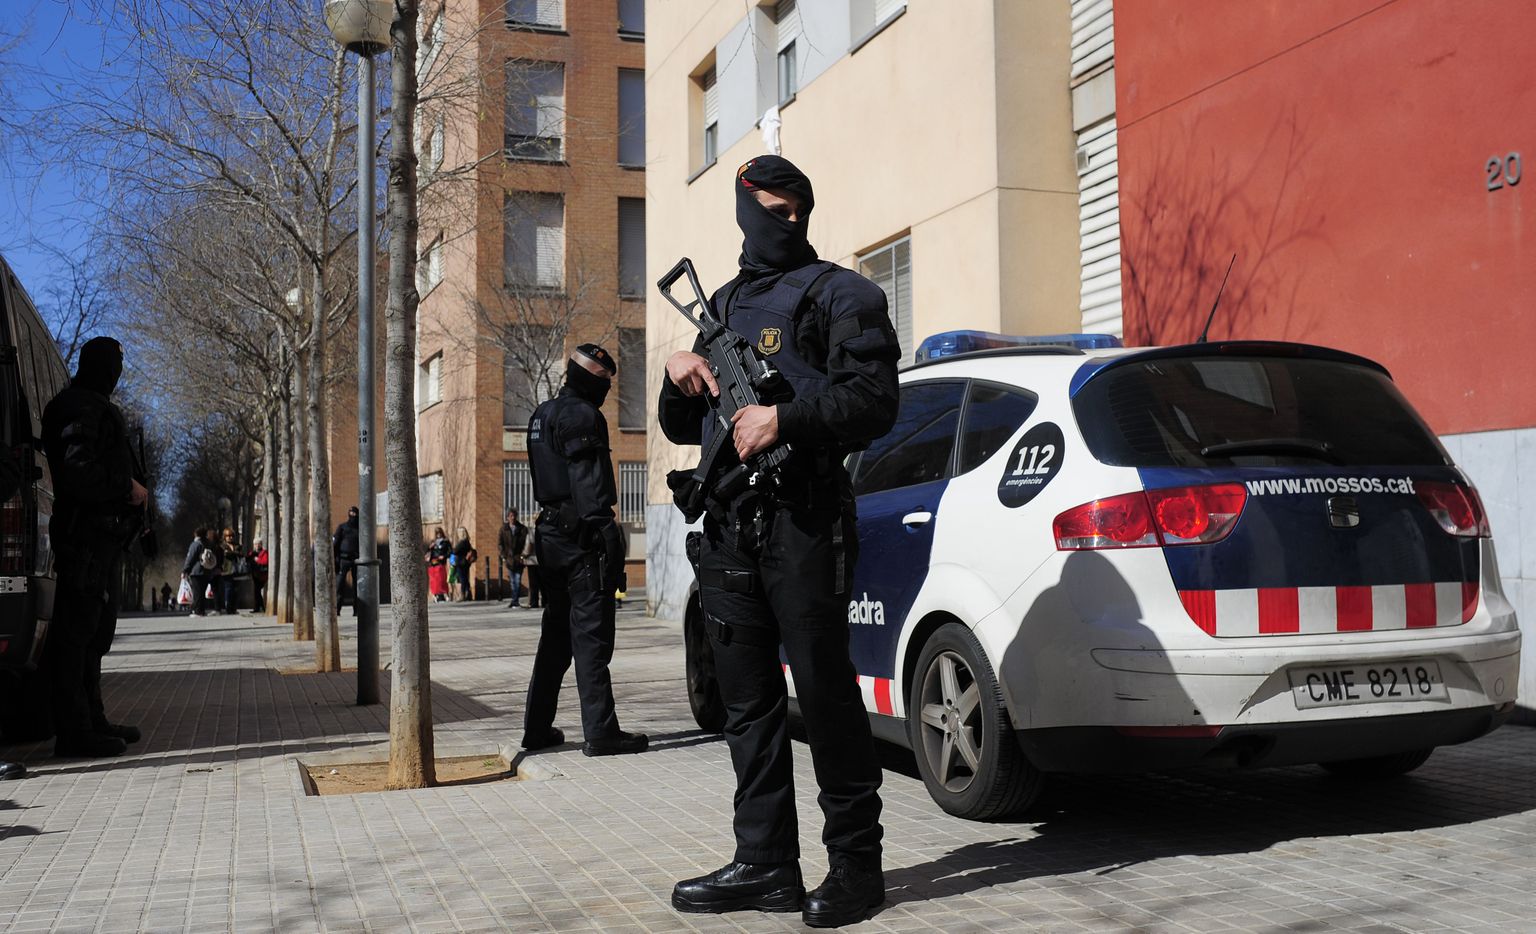 Kataloonia piirkondliku korrakaitsejõu Mossos d'Esquadra liikmed kevadel Sabadellis kümne džihadisti vahistamisega lõppenud missioonil.